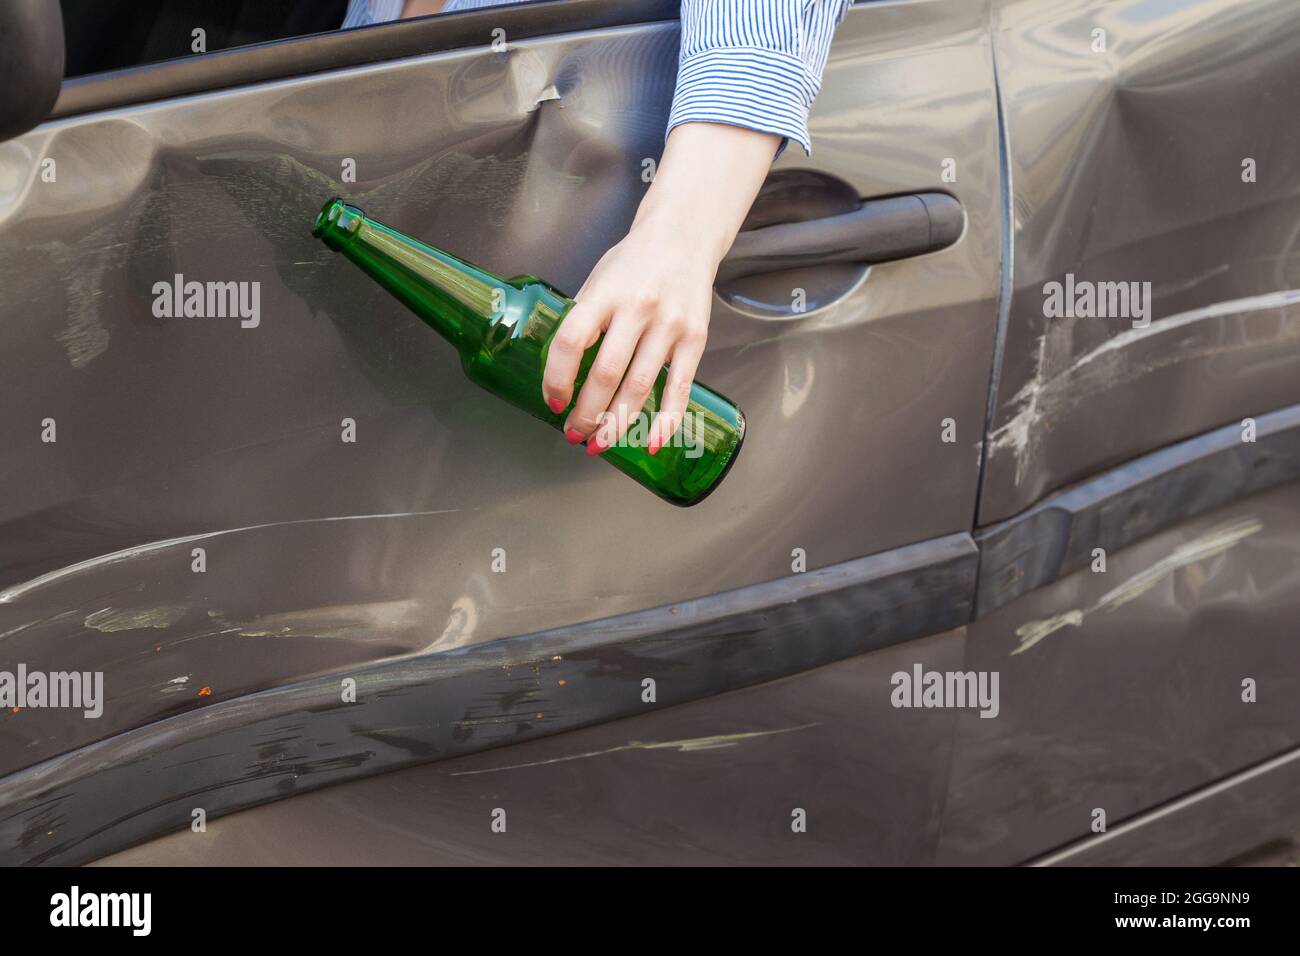 Retrato sin rostro de la mano femenina colgando de la ventana del coche con una botella de bebida alcohólica, avería debido a conductor borracho, delitos de tráfico borracho dr Foto de stock